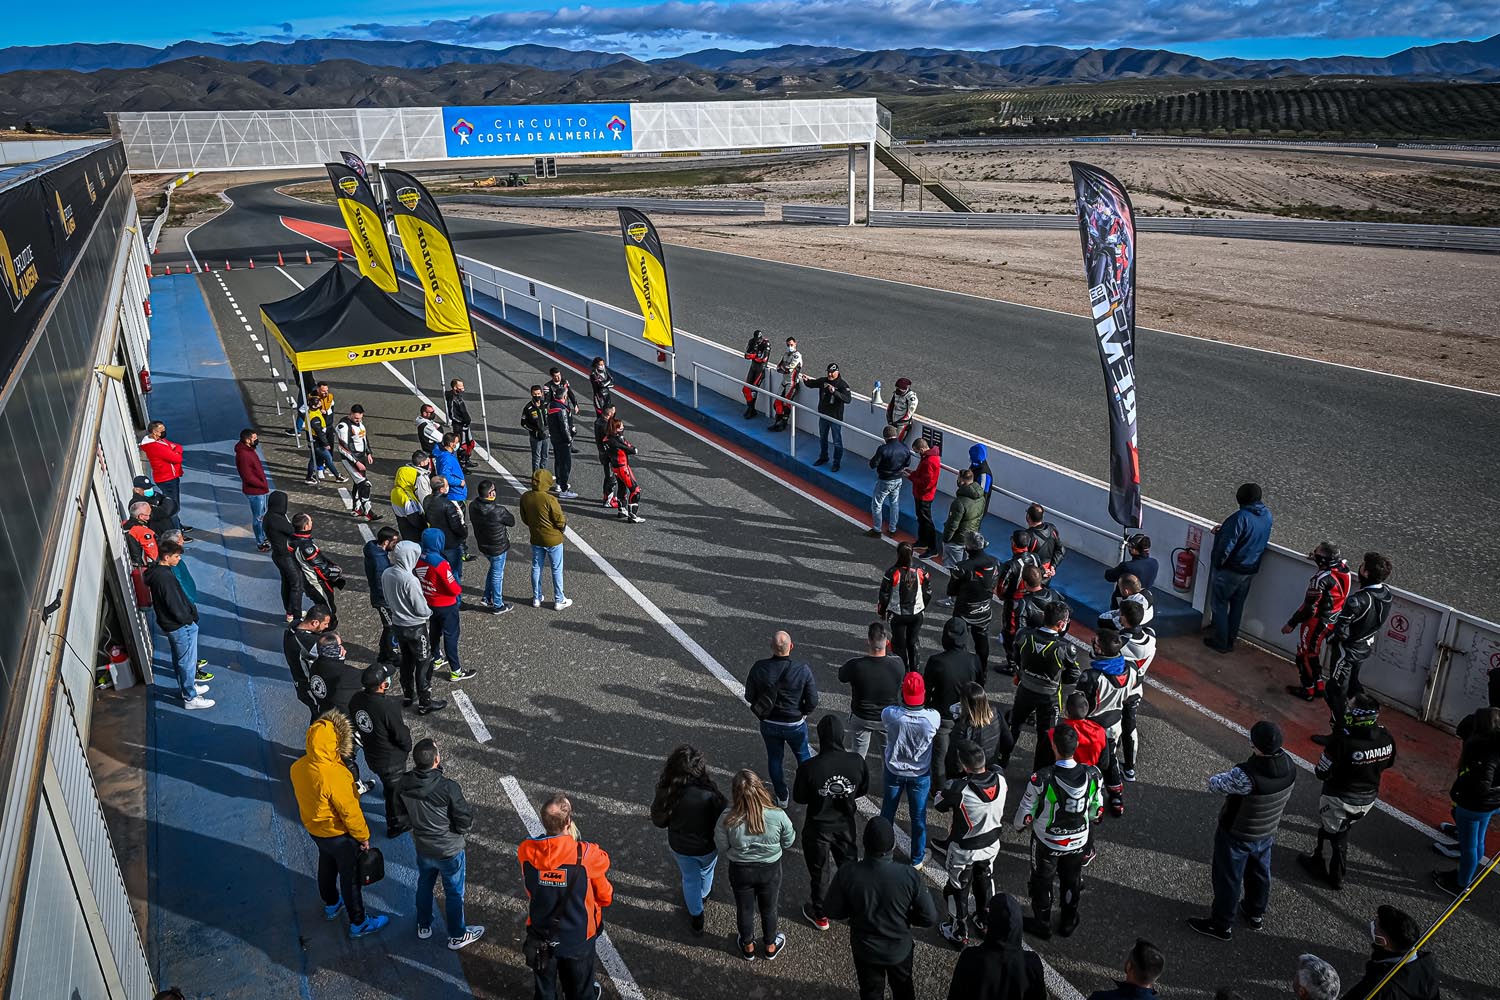 Fotografías Circuito de Almería Abril 2022 - Motor Extremo